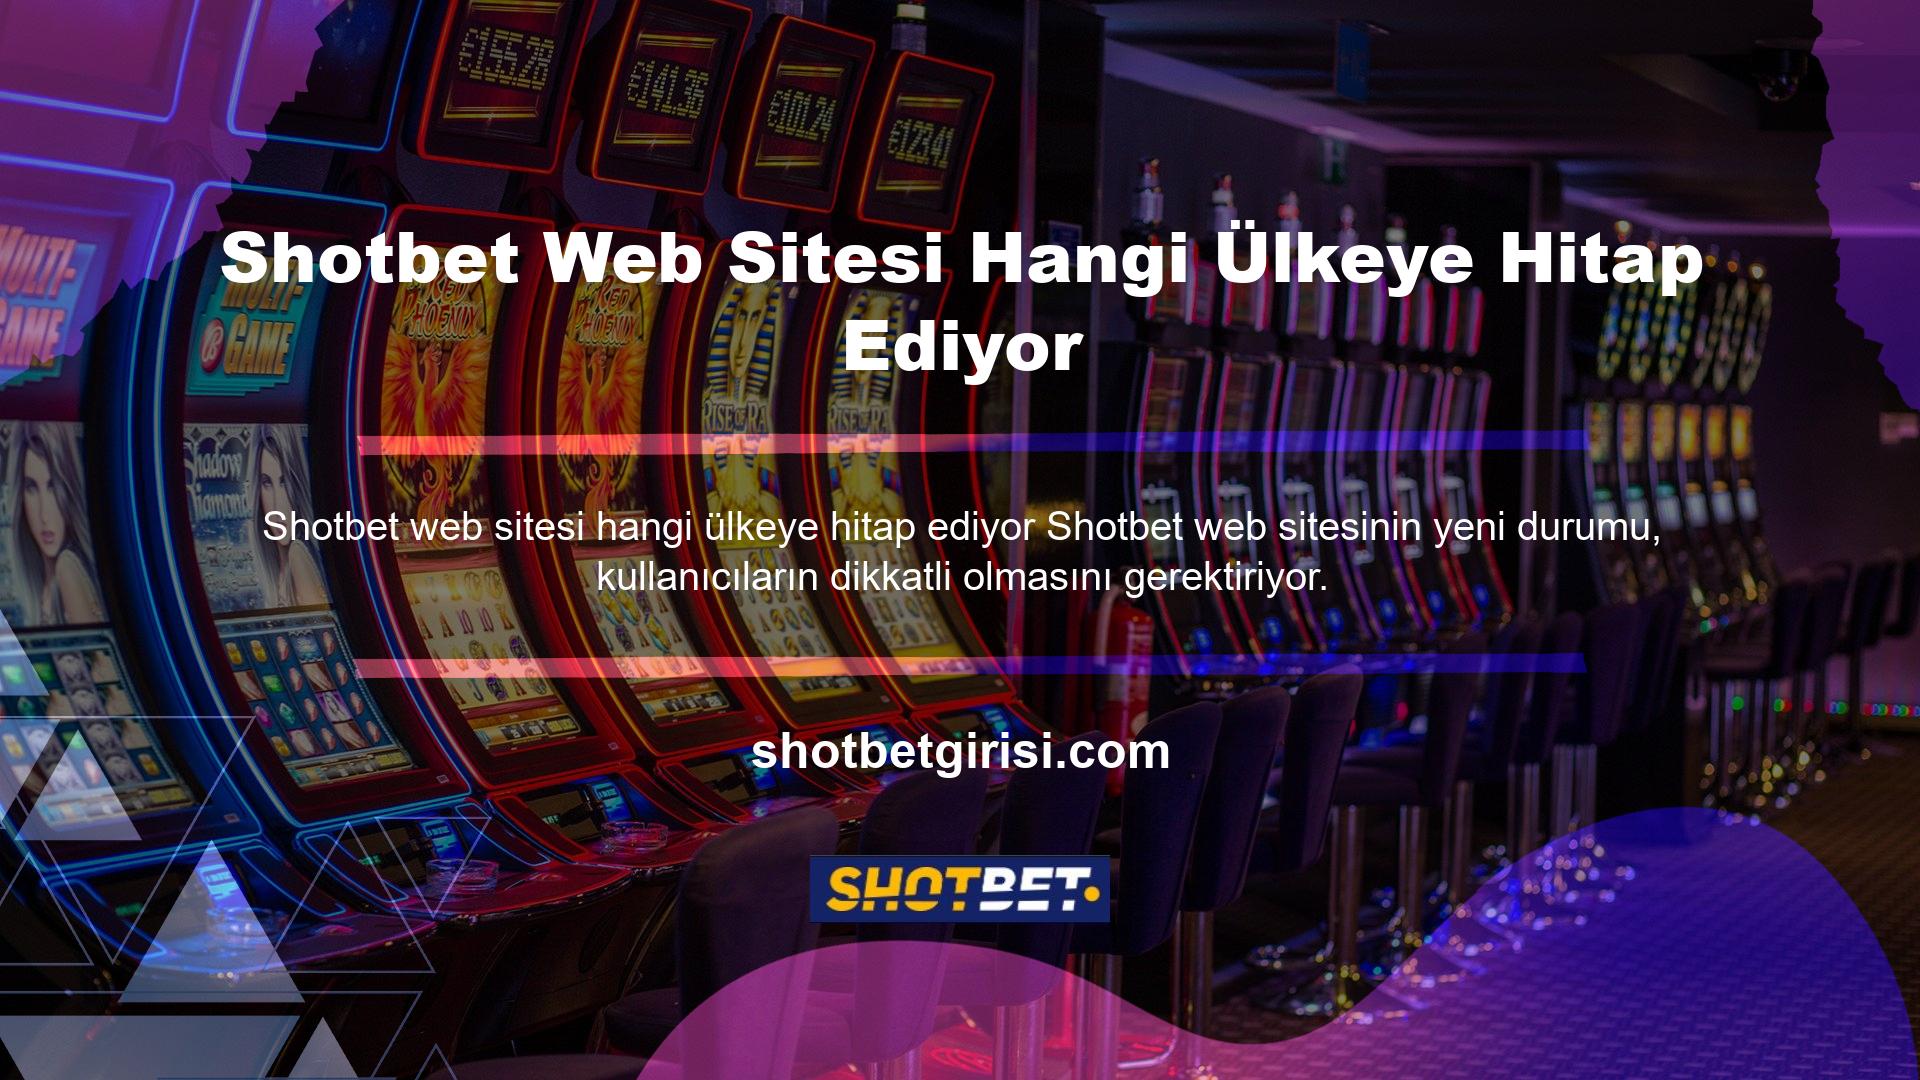 Shotbet sitesi, poker oyuncularının plaka gerekliliklerinin önemini dikkate alması nedeniyle ciddi bir endişe kaynağıdır